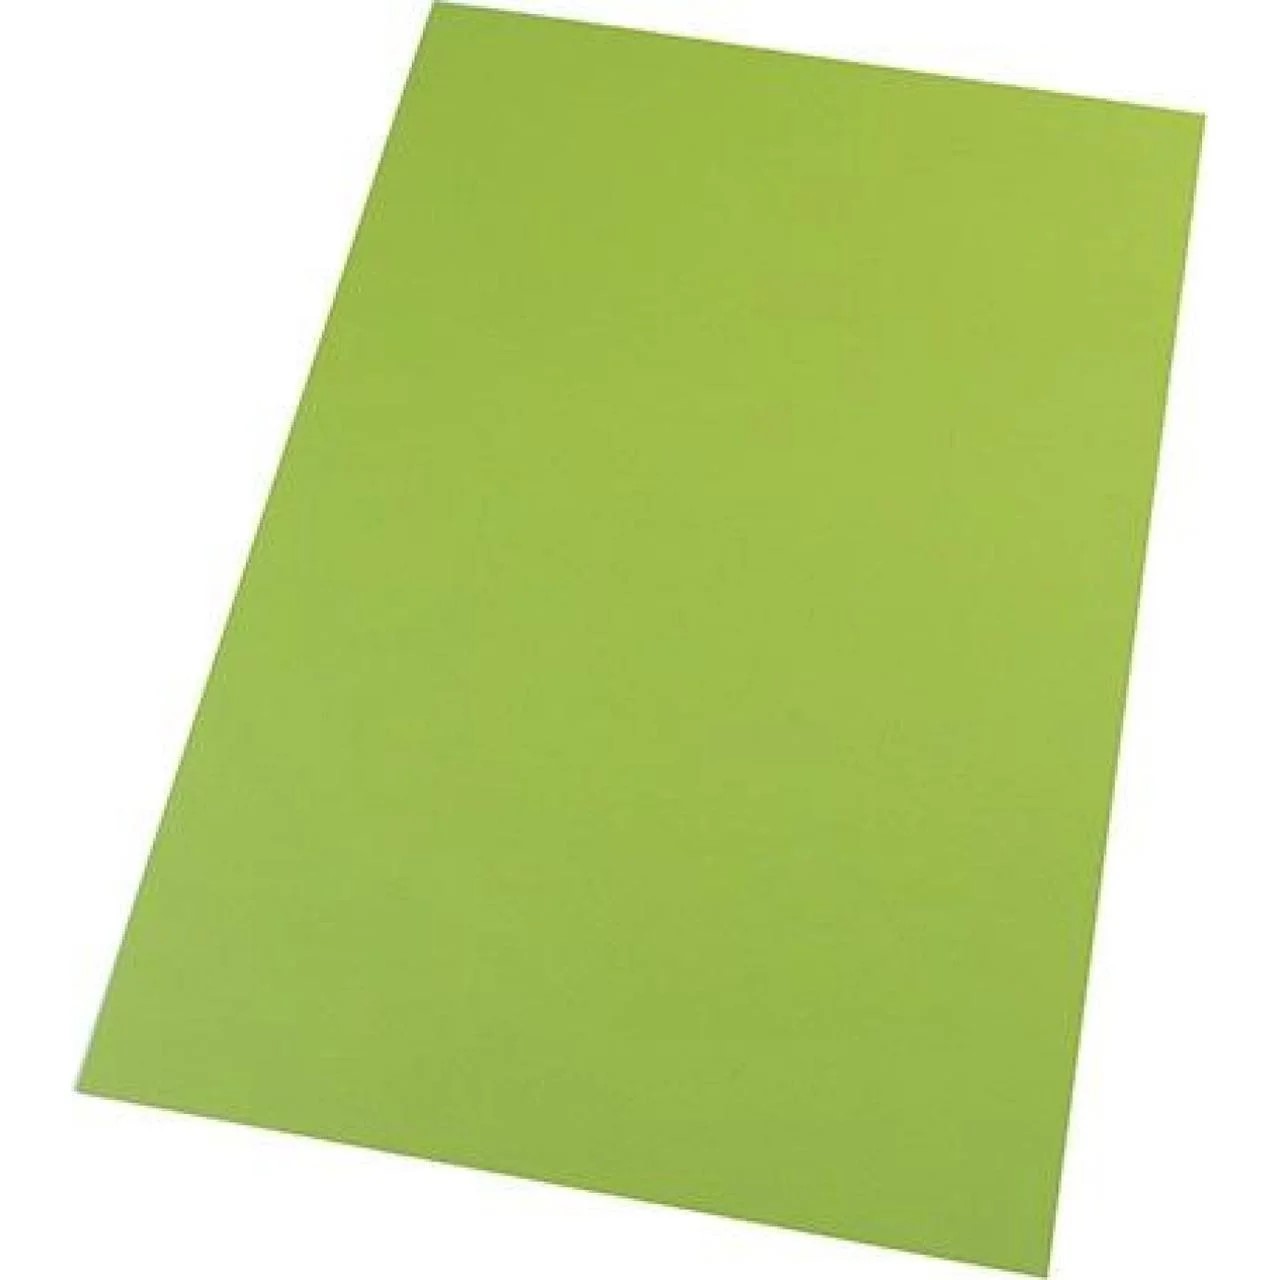 Бумага для пастели Tiziano A4 (21 * 29,7см), №43 pistacch, 160г / м2, фисташковый, среднее зерно, Fabriano